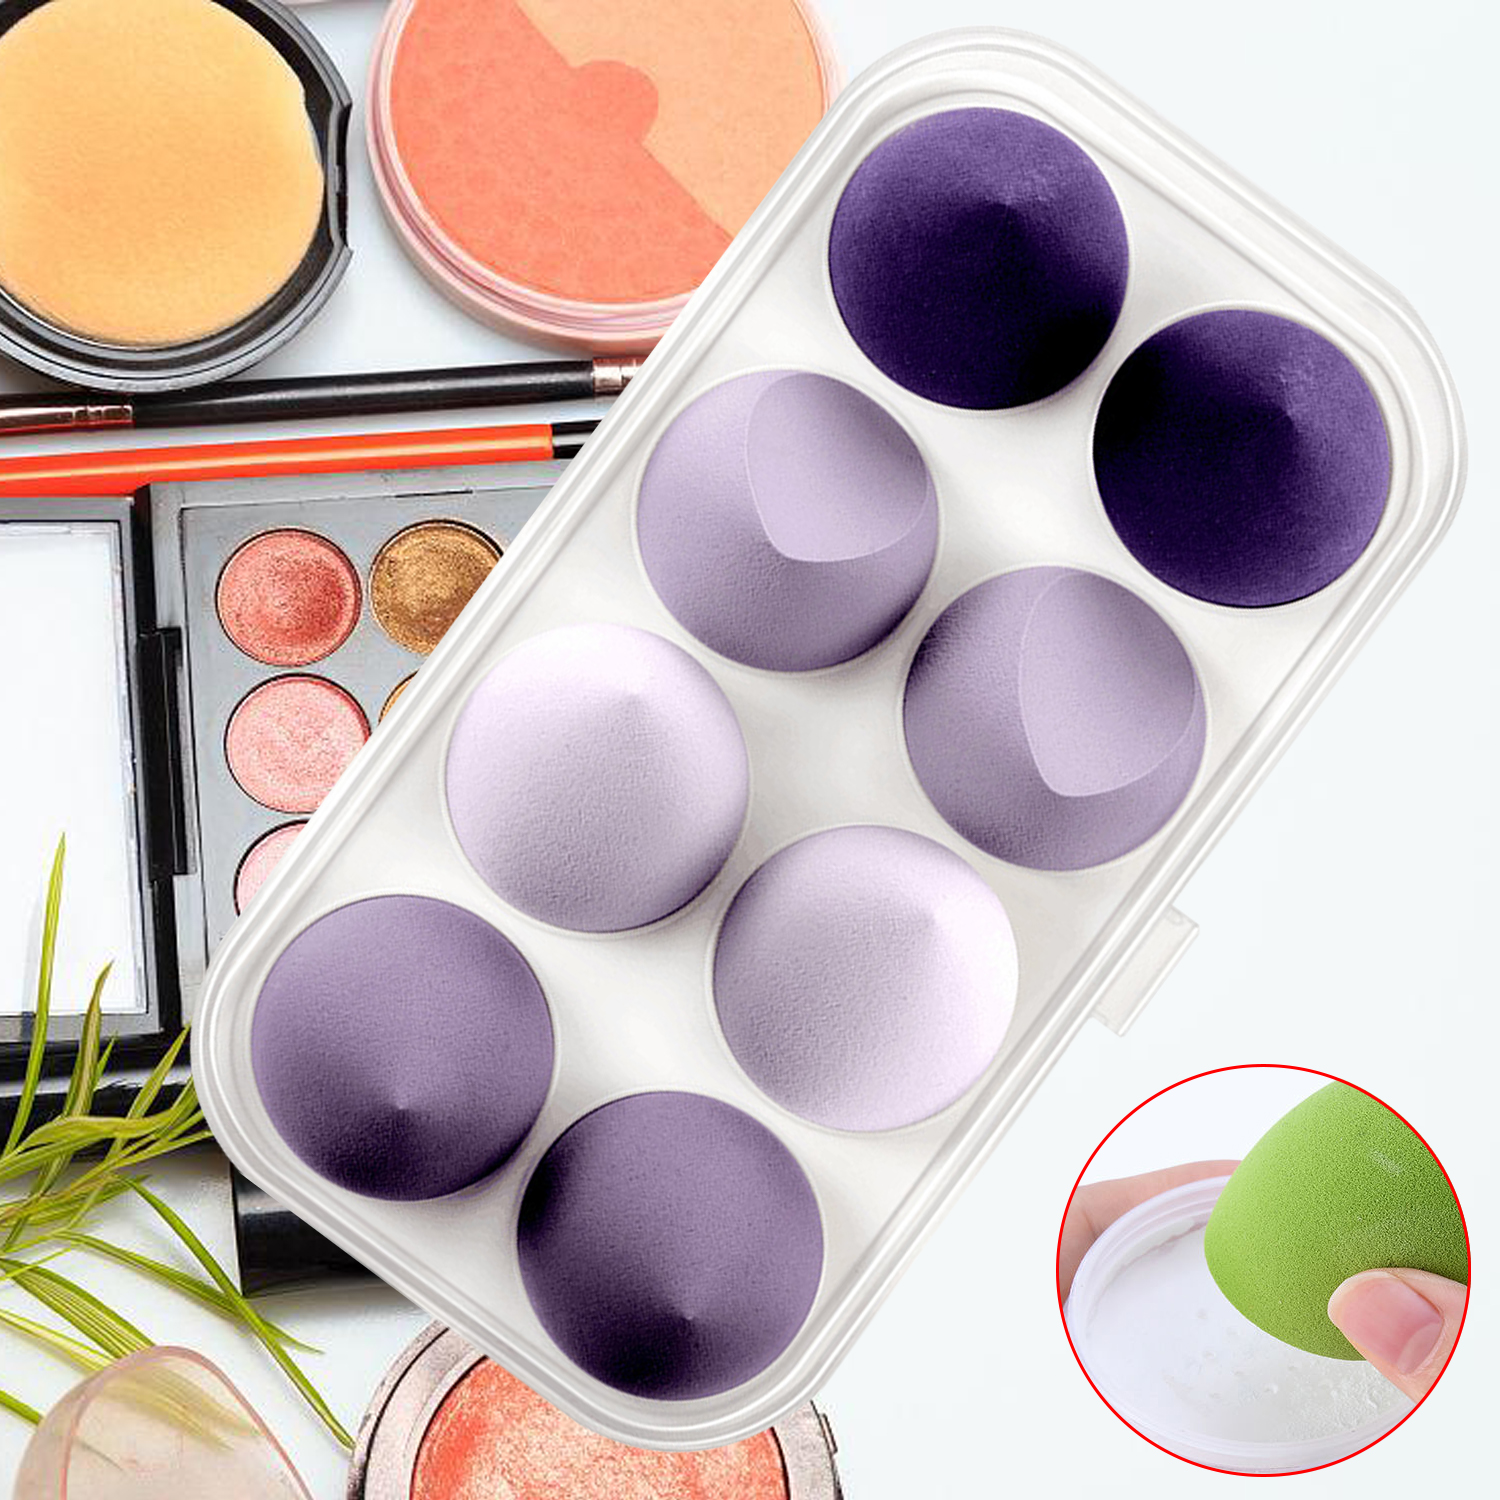 Esponja de maquillaje supersuave respetuosa con el medio ambiente de microfibra, 8 Uds., con caja de belleza, juego de huevos de esponja de maquillaje